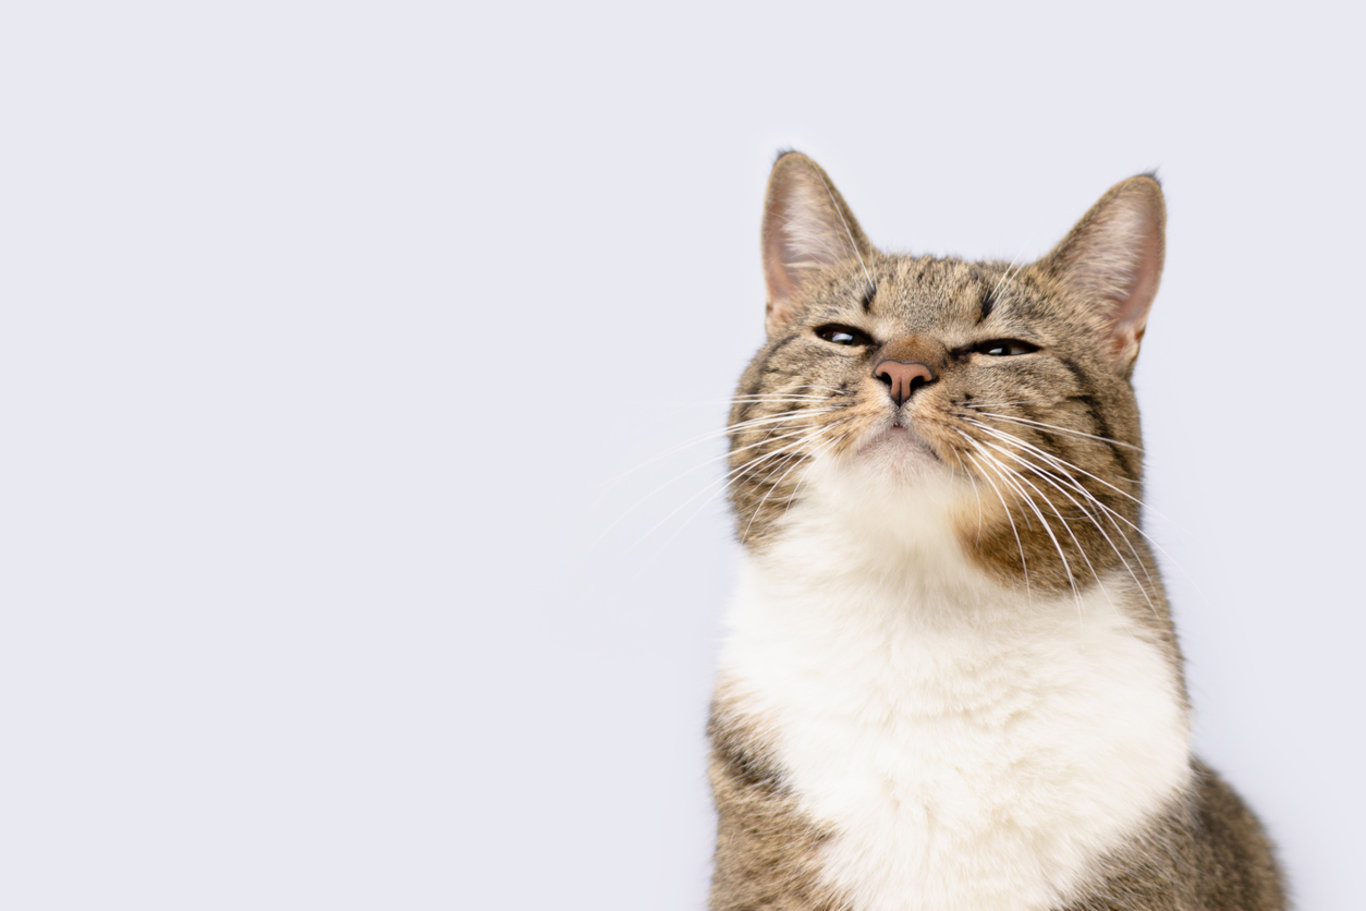 Kediler nefes alırken neden ağızlarını açar ve normal midir? Kediler neden ağızlarını açar?